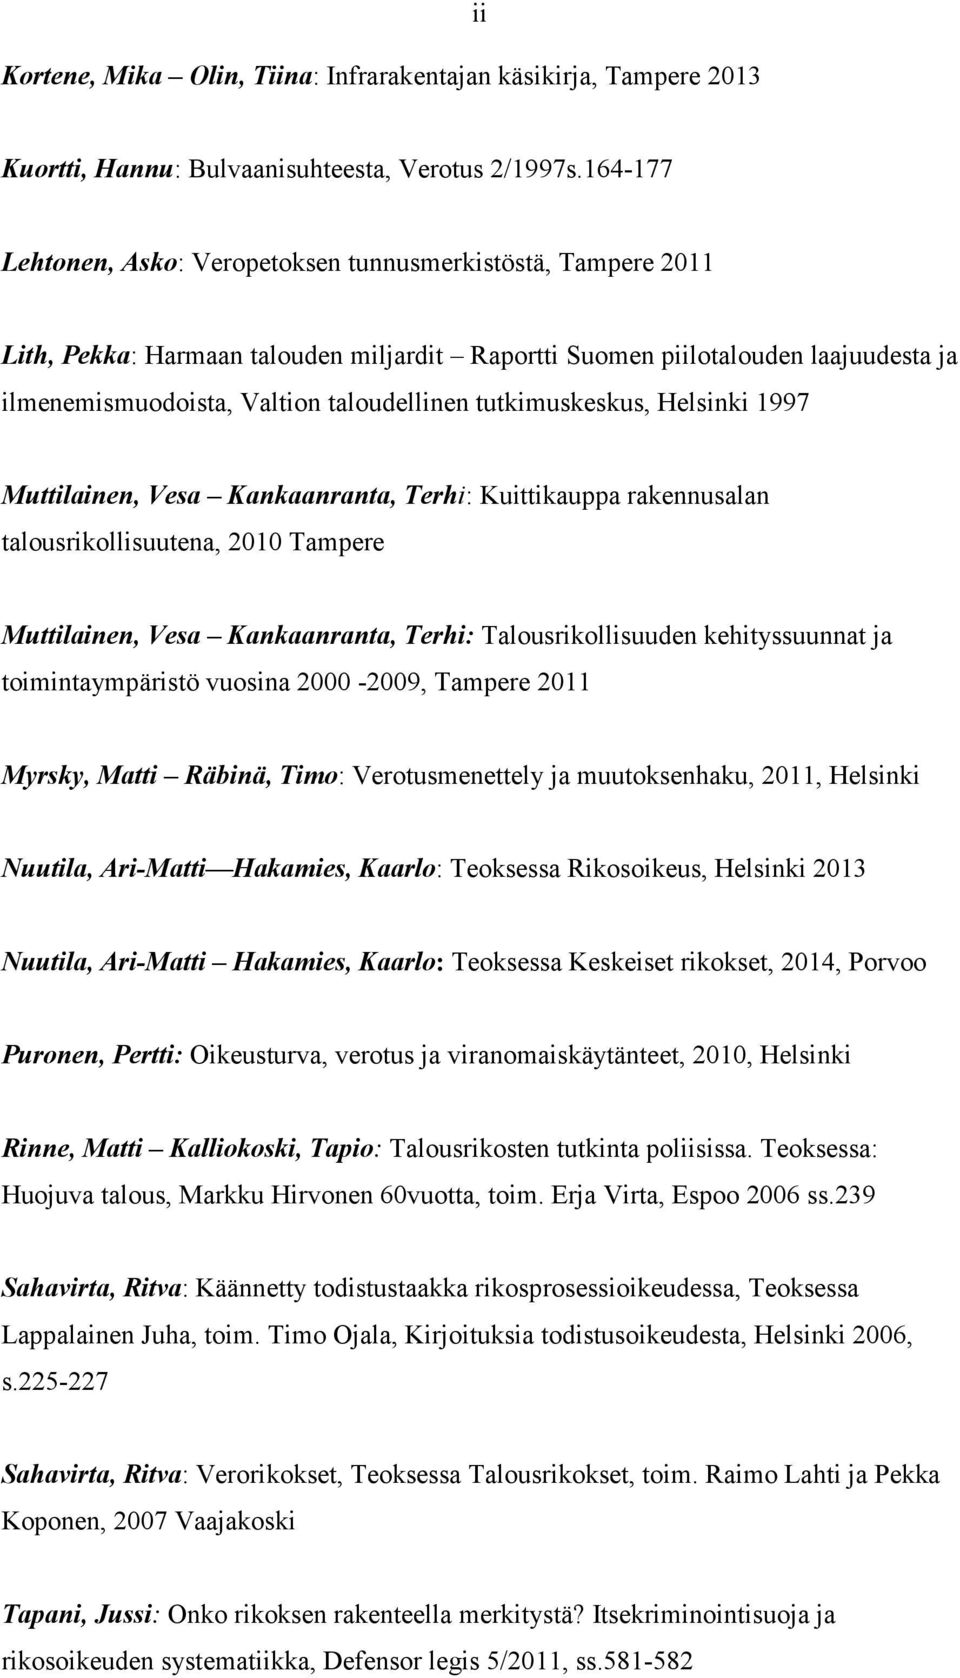 tutkimuskeskus, Helsinki 1997 Muttilainen, Vesa Kankaanranta, Terhi: Kuittikauppa rakennusalan talousrikollisuutena, 2010 Tampere Muttilainen, Vesa Kankaanranta, Terhi: Talousrikollisuuden